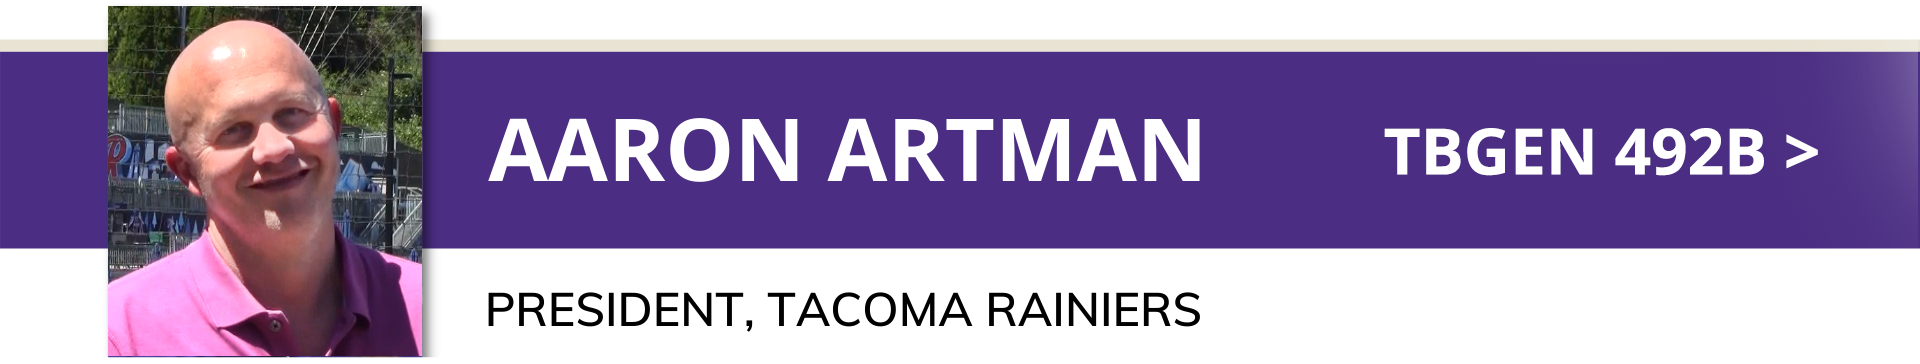 Aaron Artman - President, Tacoma Rainiers